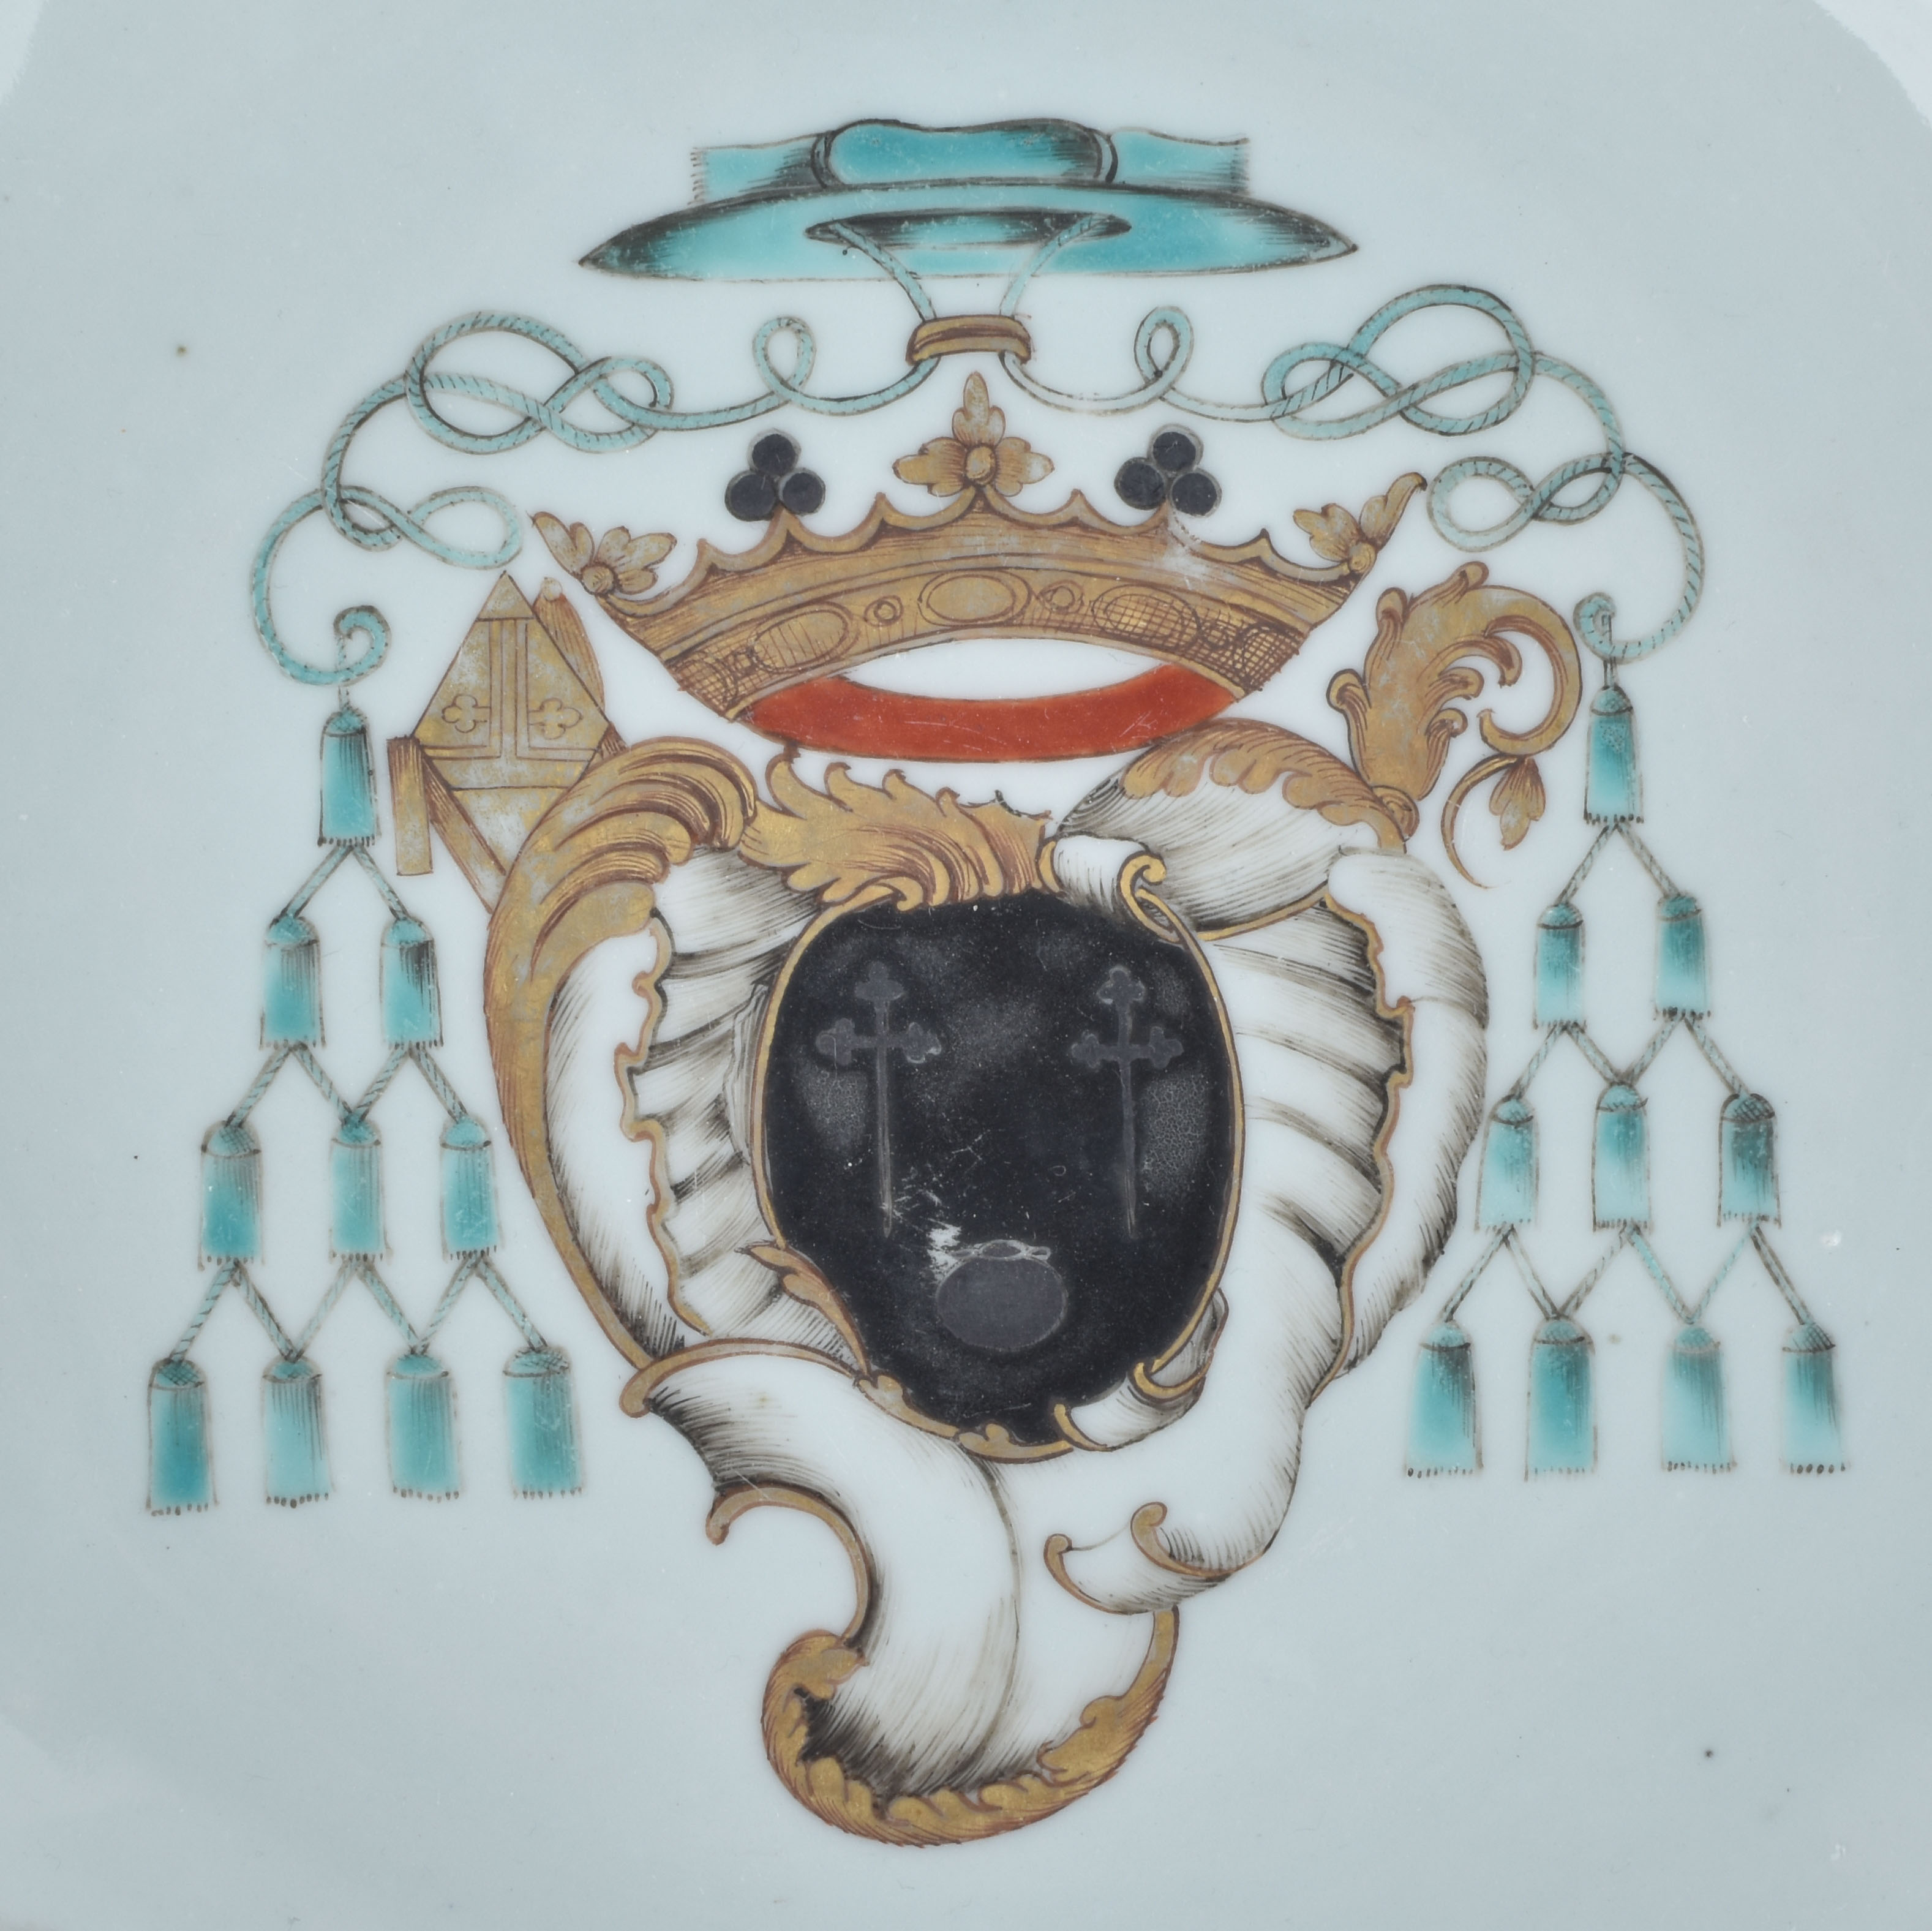 Porcelain Qianlong (1735-1795), circa 1750/55, China